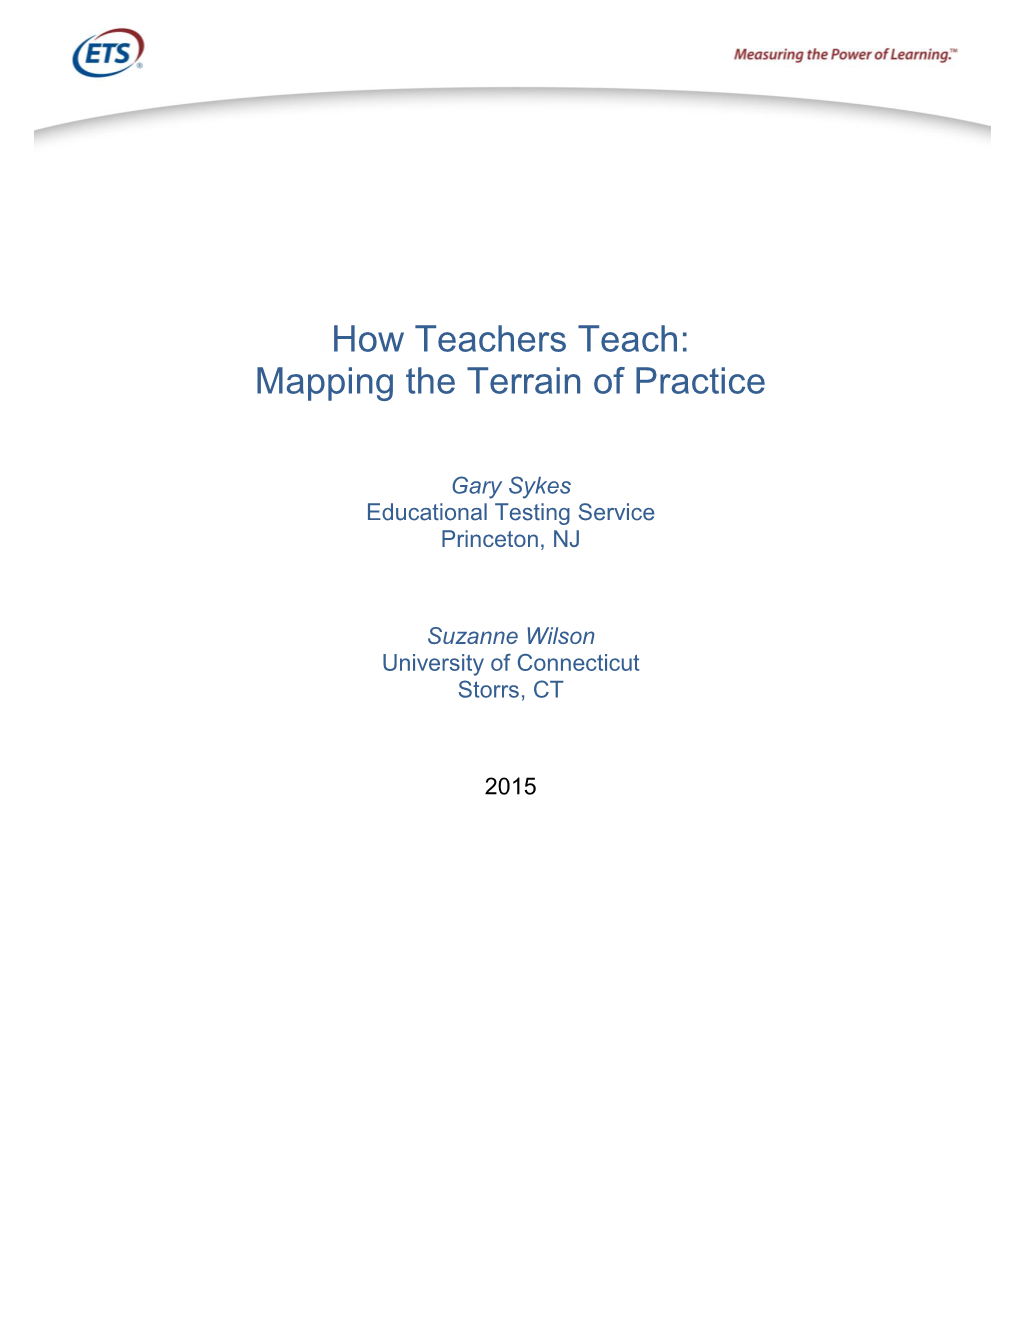 How Teachers Teach: Mapping the Terrain of Practice